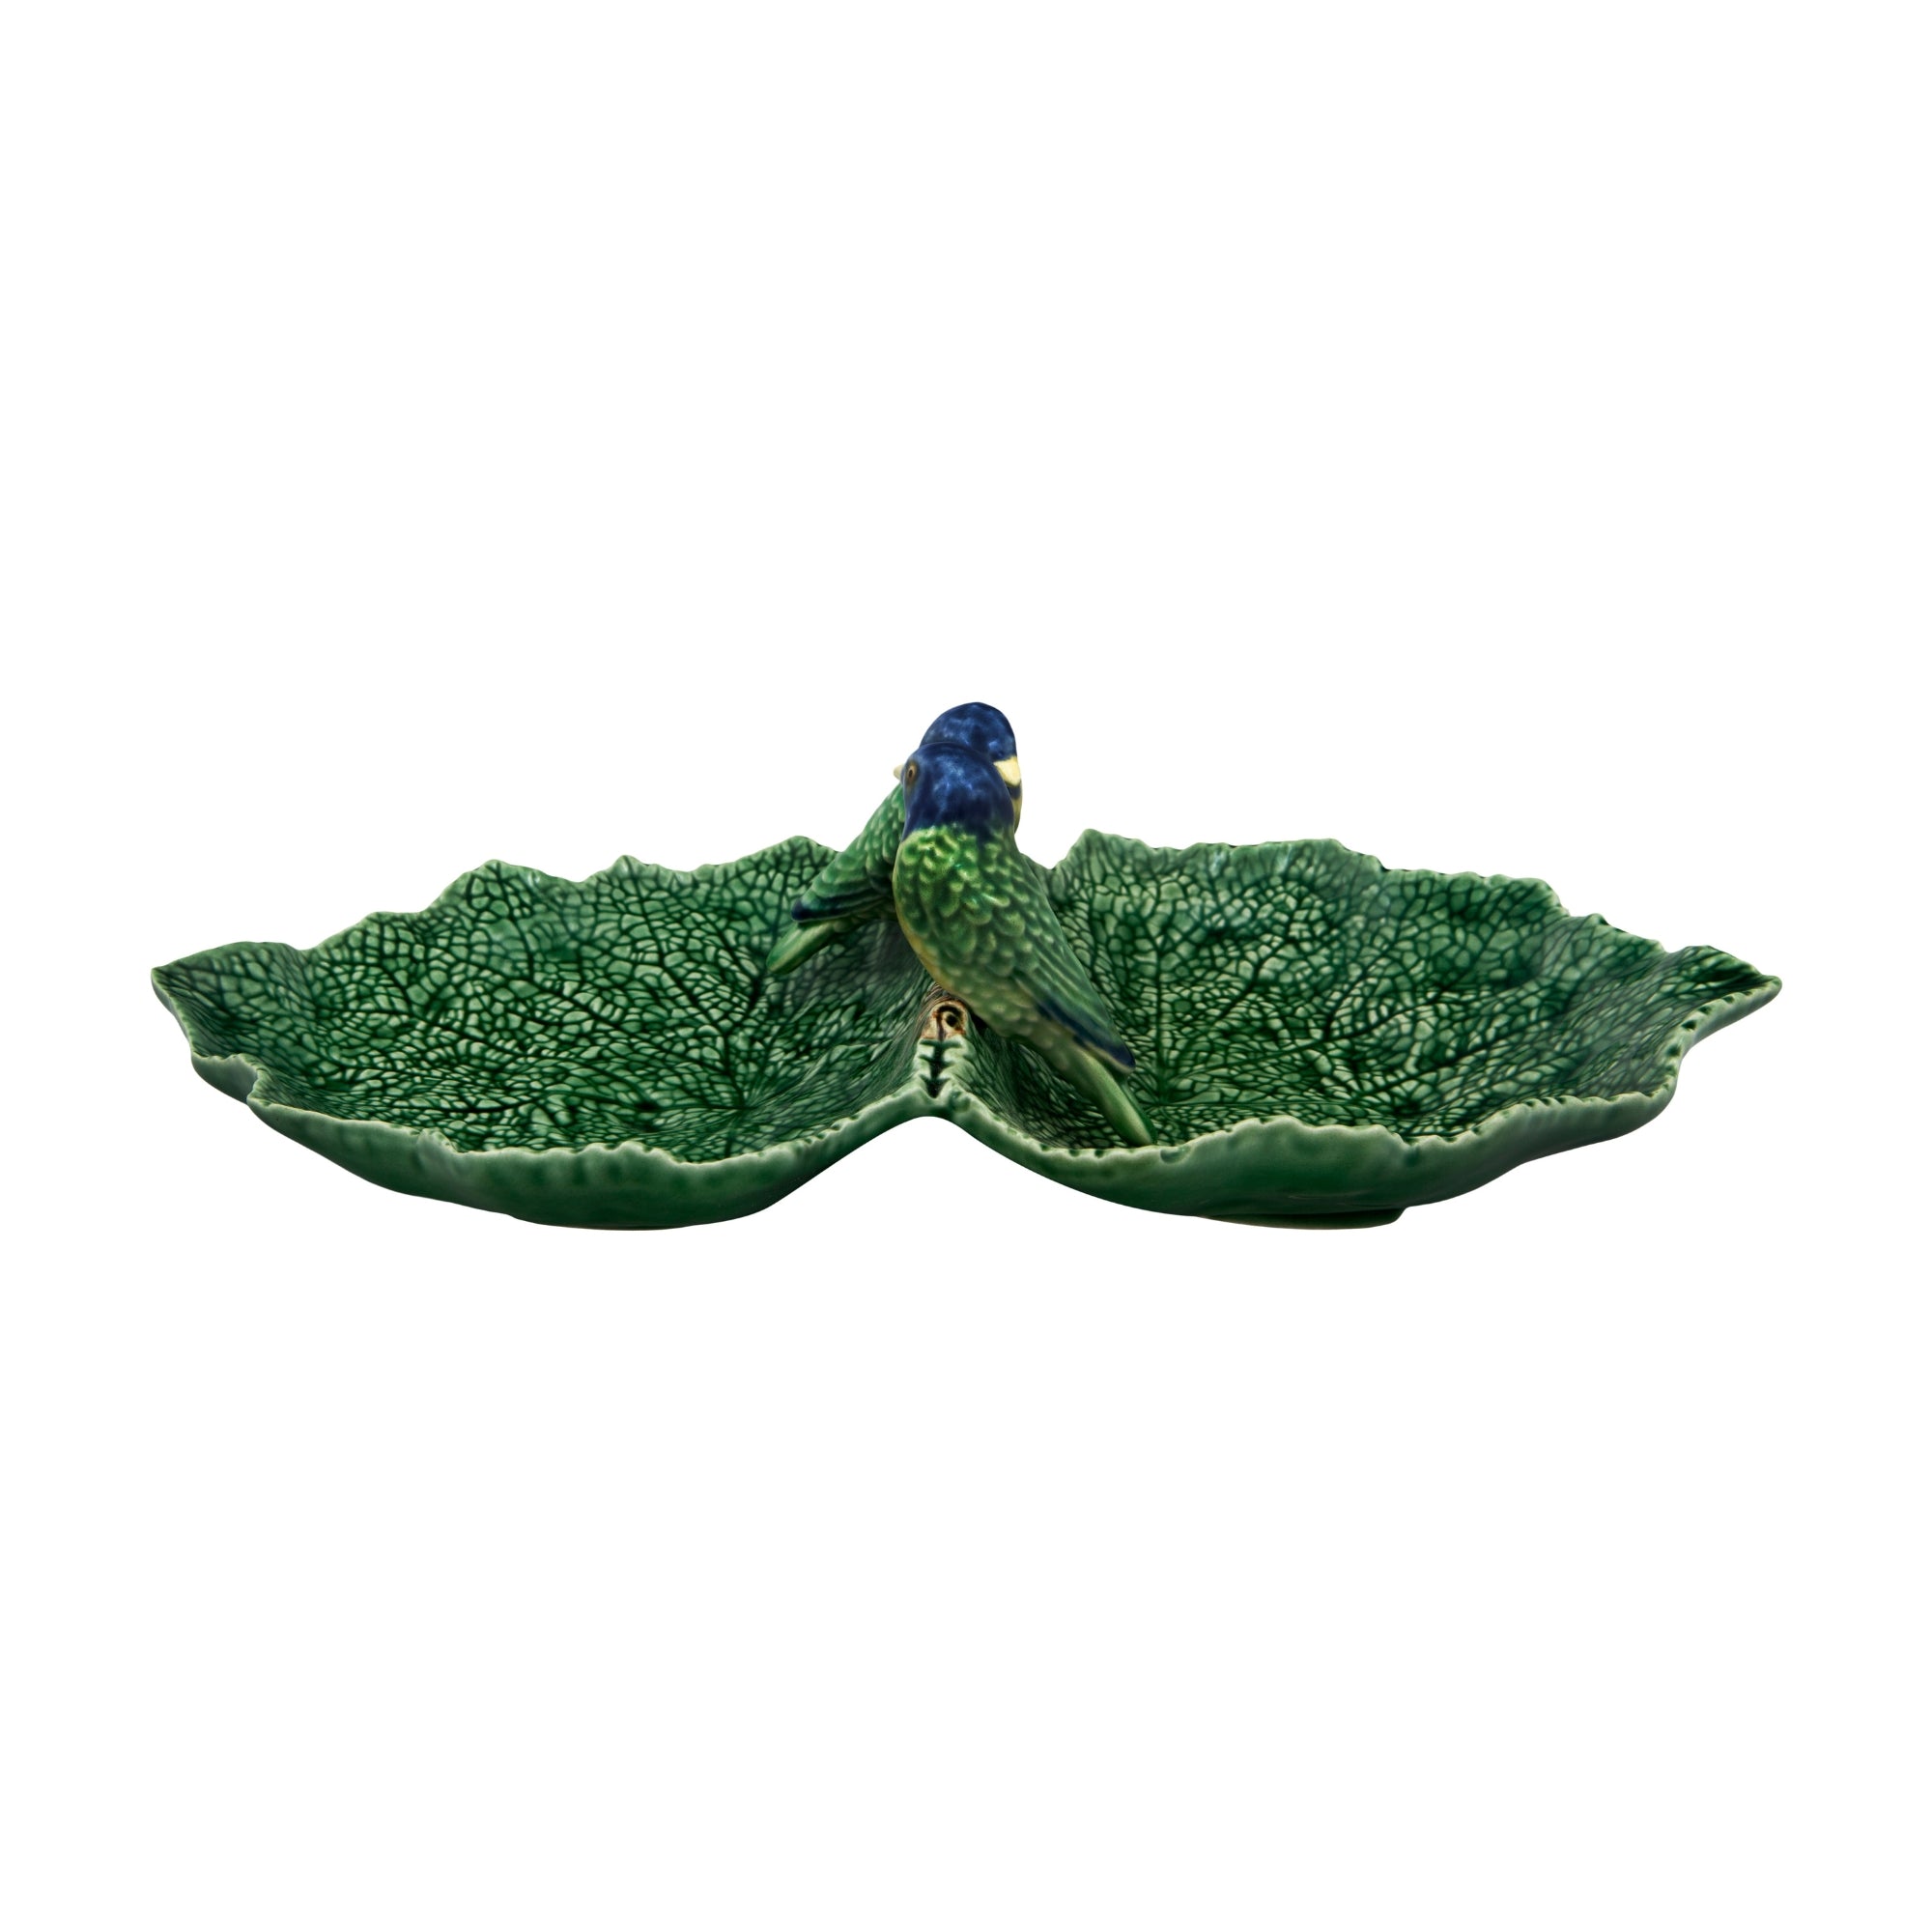 Bordallo Pinheiro Cinerária Blatttablett mit zwei blauen Vögeln, 34 cm